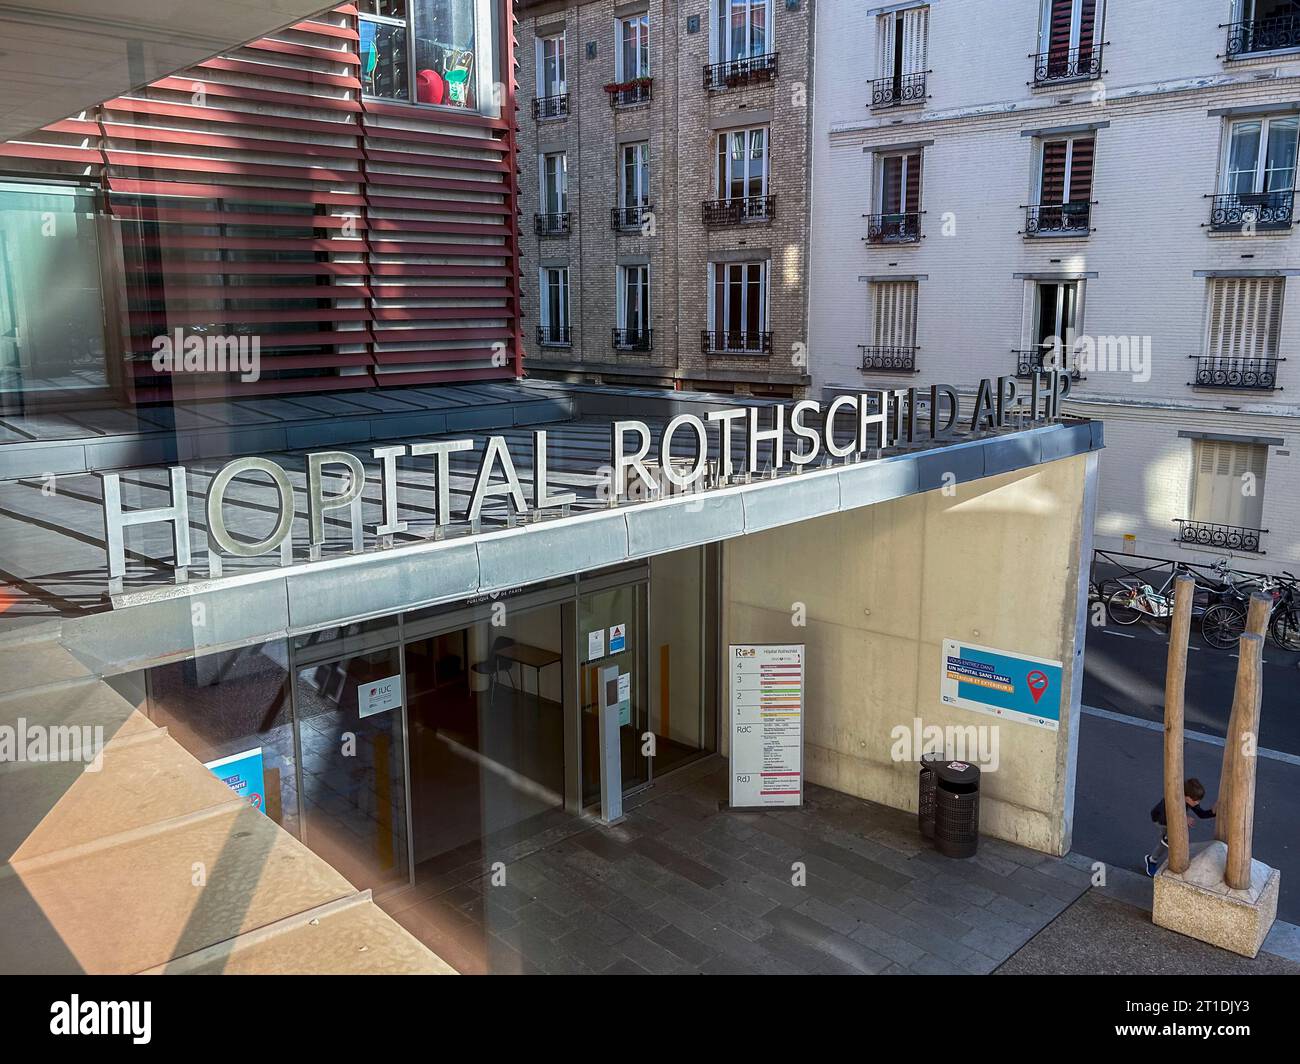 Parigi, Francia, Vista dalla finestra, insegna, ospedale pubblico francese, Hopital Rothschild, edificio, dodicesimo distretto Foto Stock